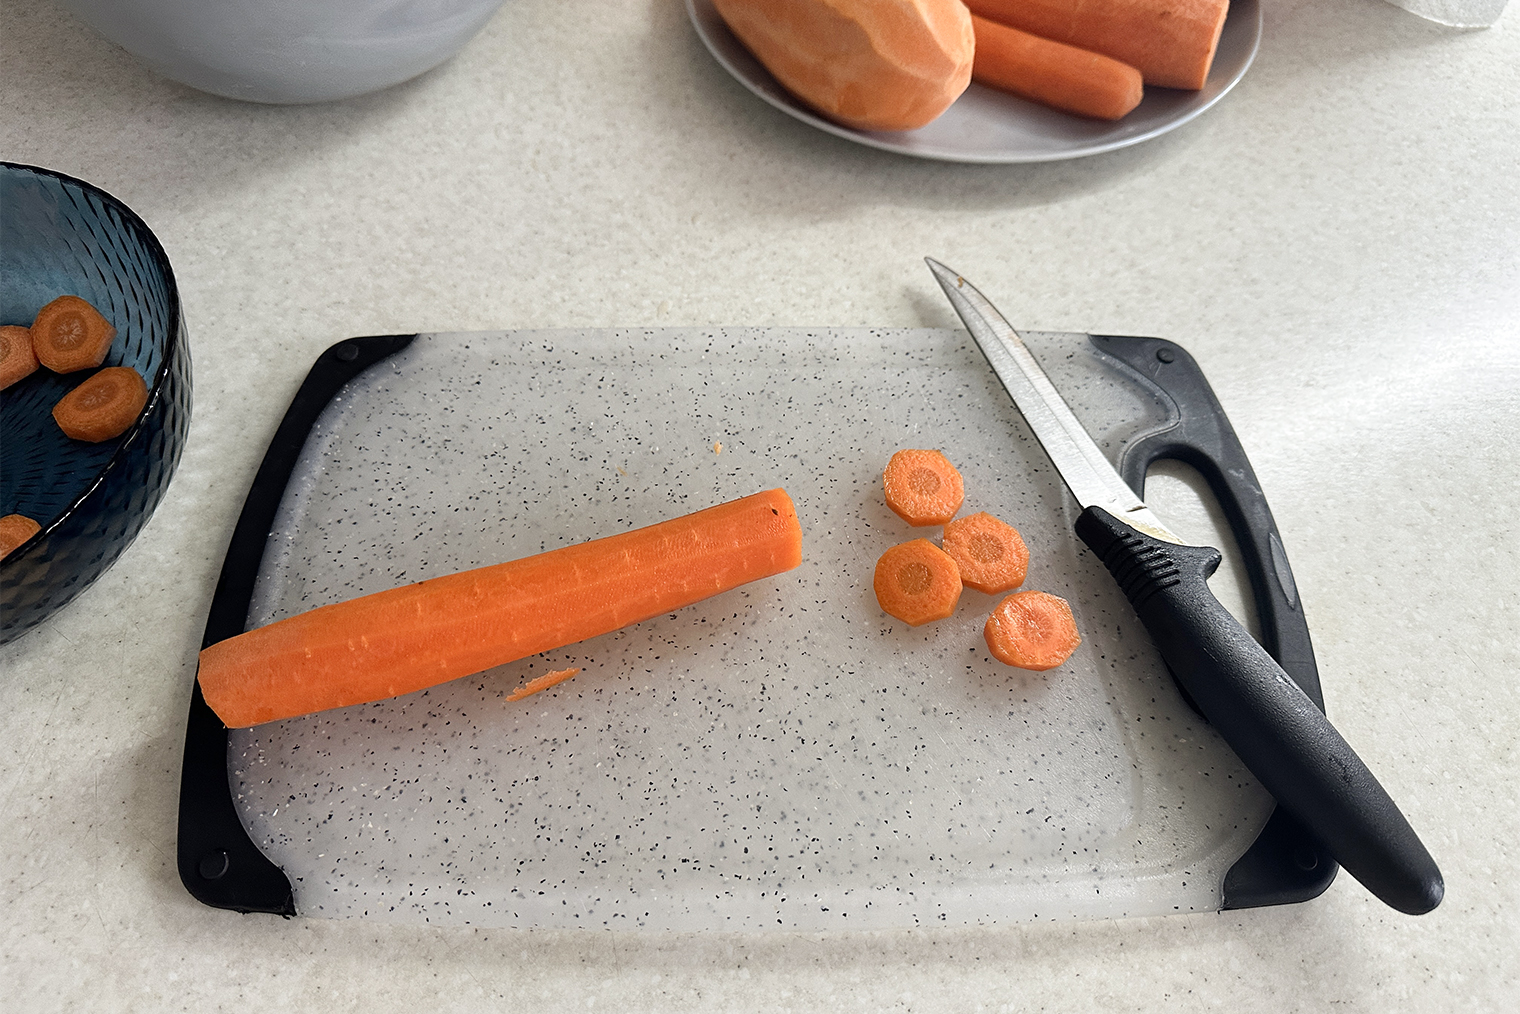 С самого начала мне казалось, что 1 кг моркови — это много, но я продолжила следовать рецепту